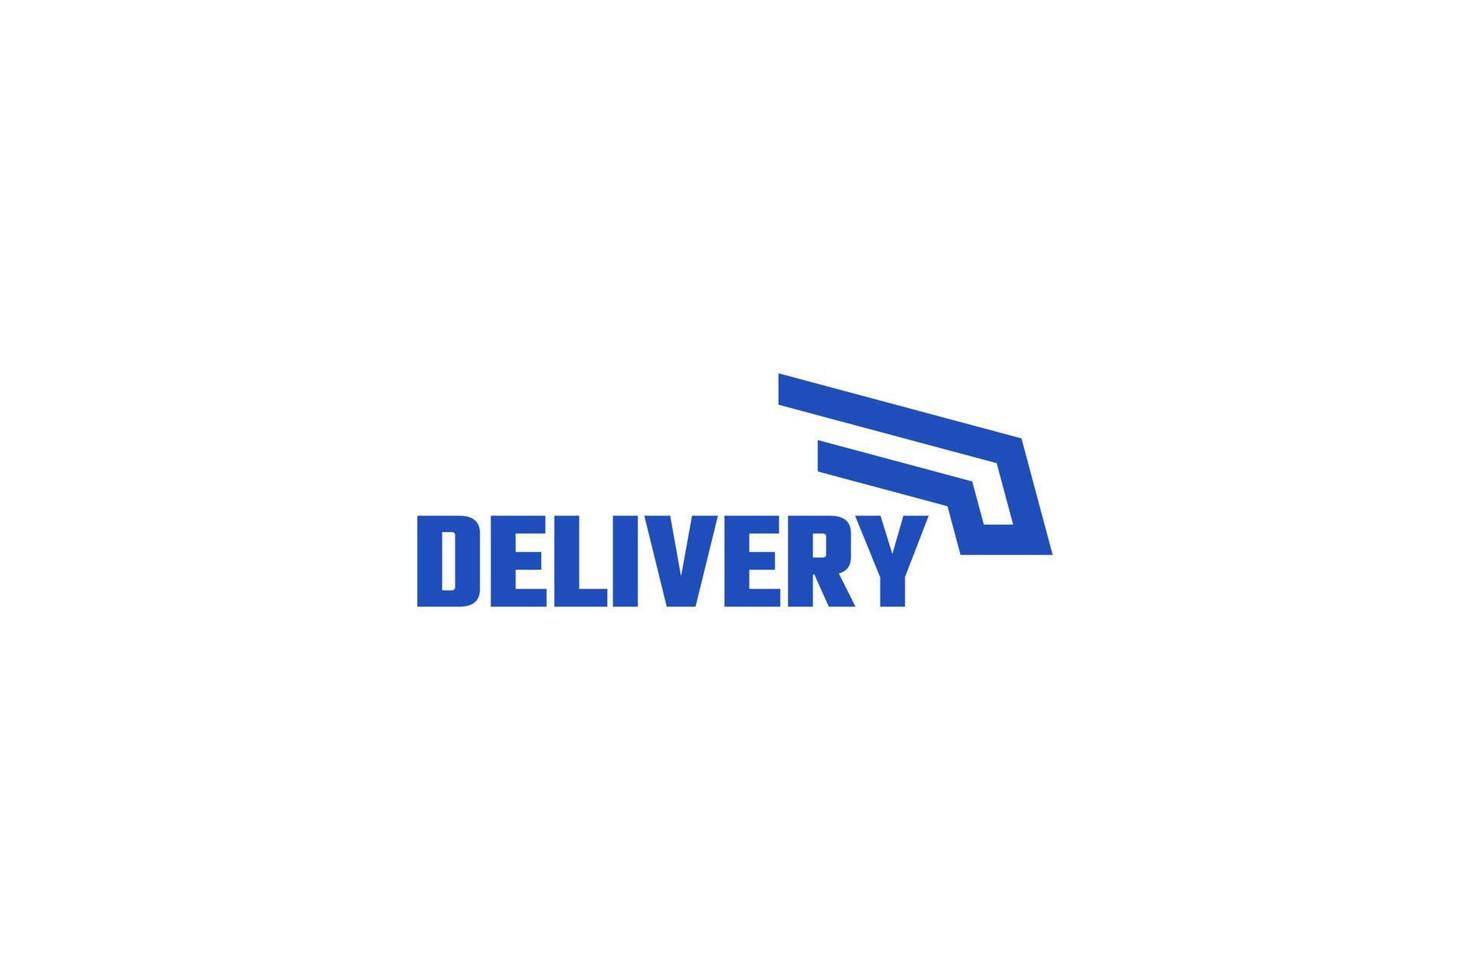 Delivery logo design vector